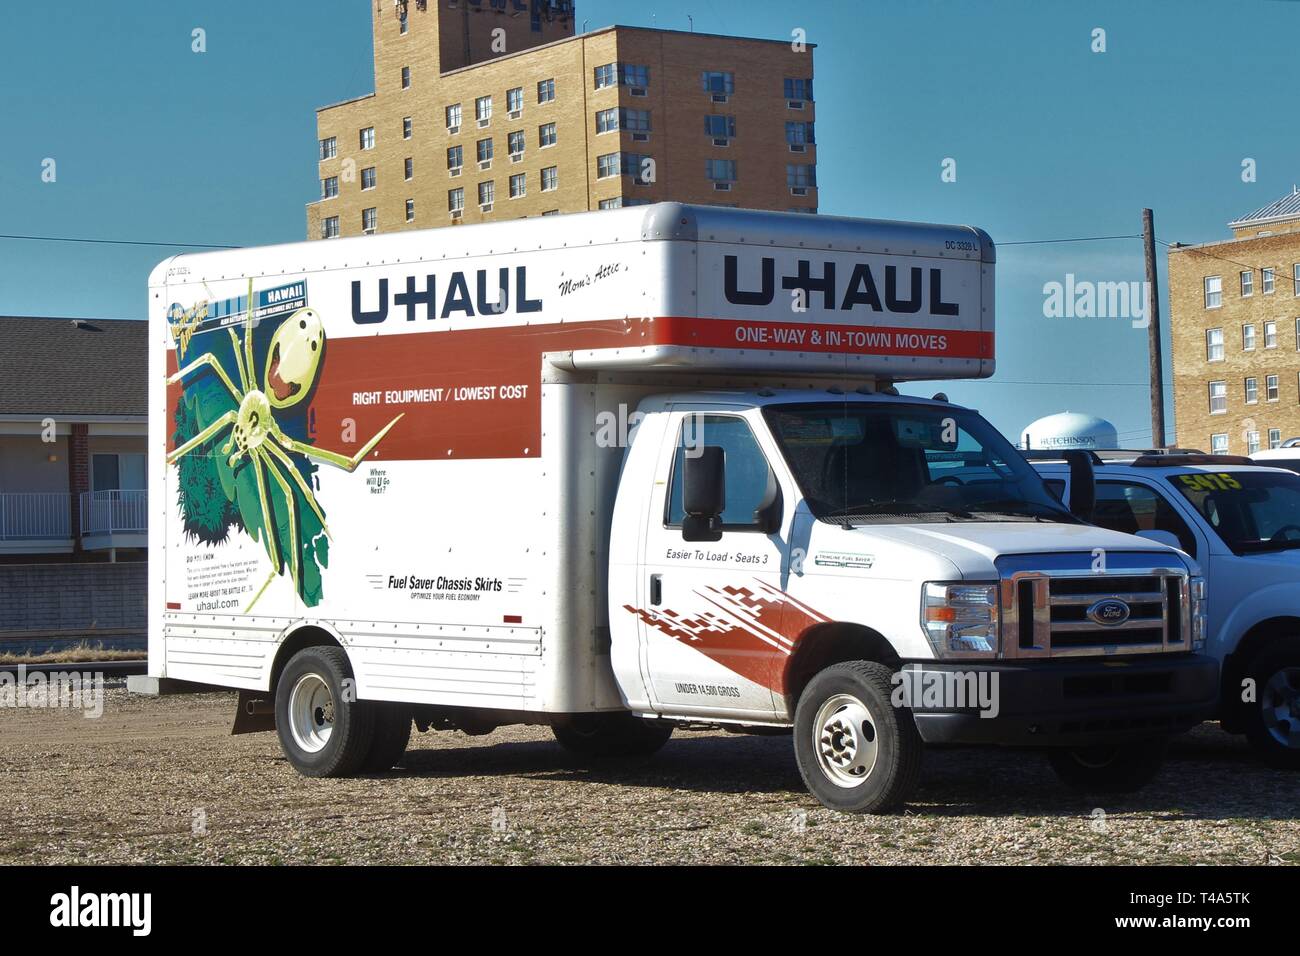 Rental truck -Fotos und -Bildmaterial in hoher Auflösung – Alamy